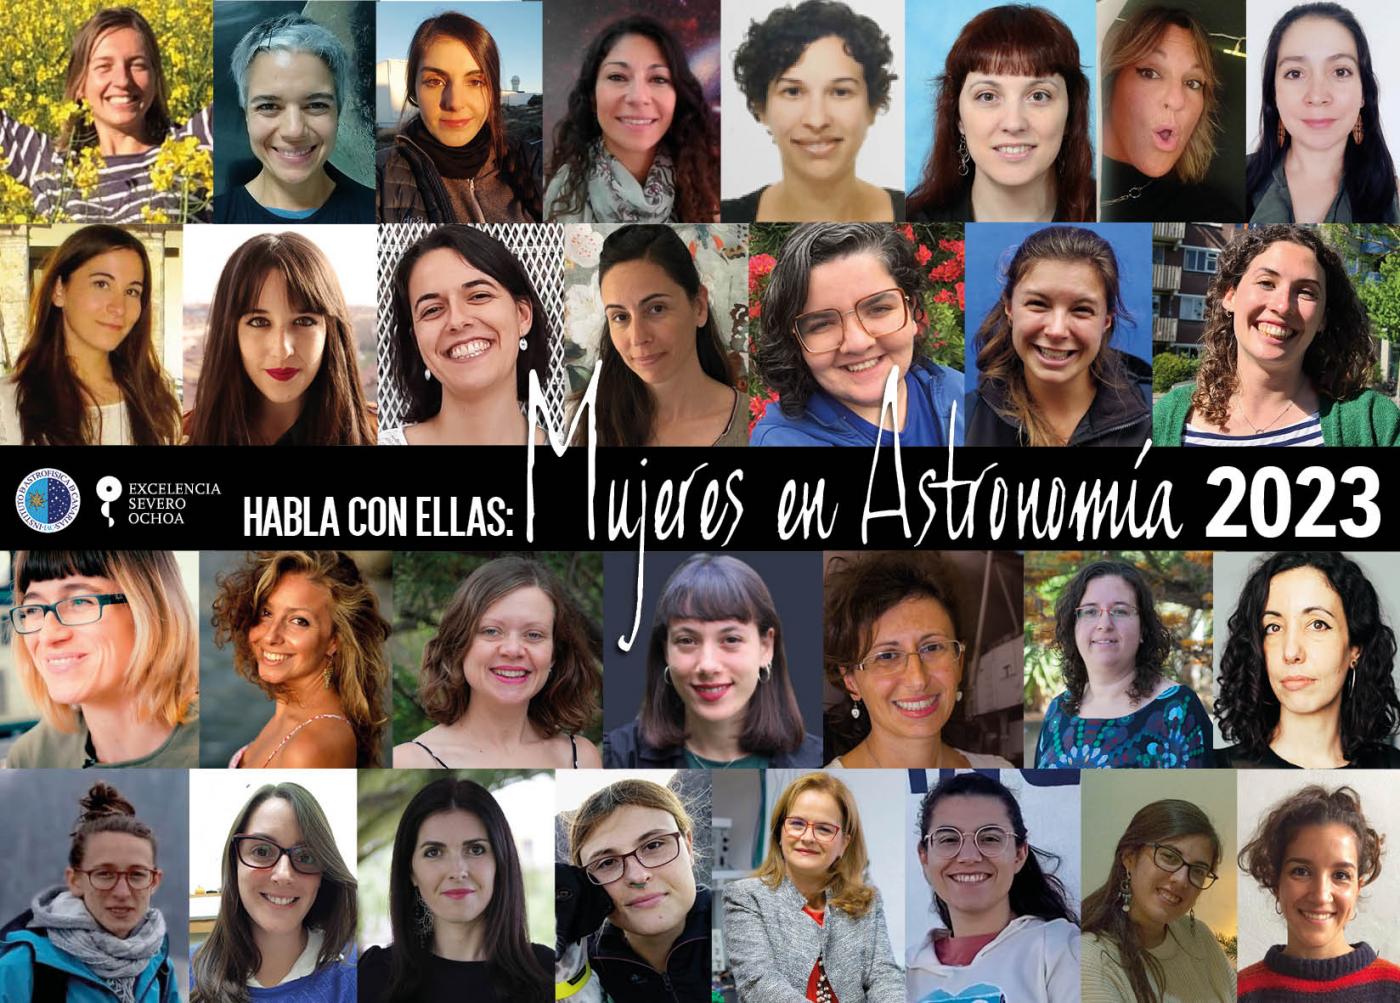 Cartel anunciador del proyecto "Habla con Ellas: Mujeres en Astronomía" edición 2023